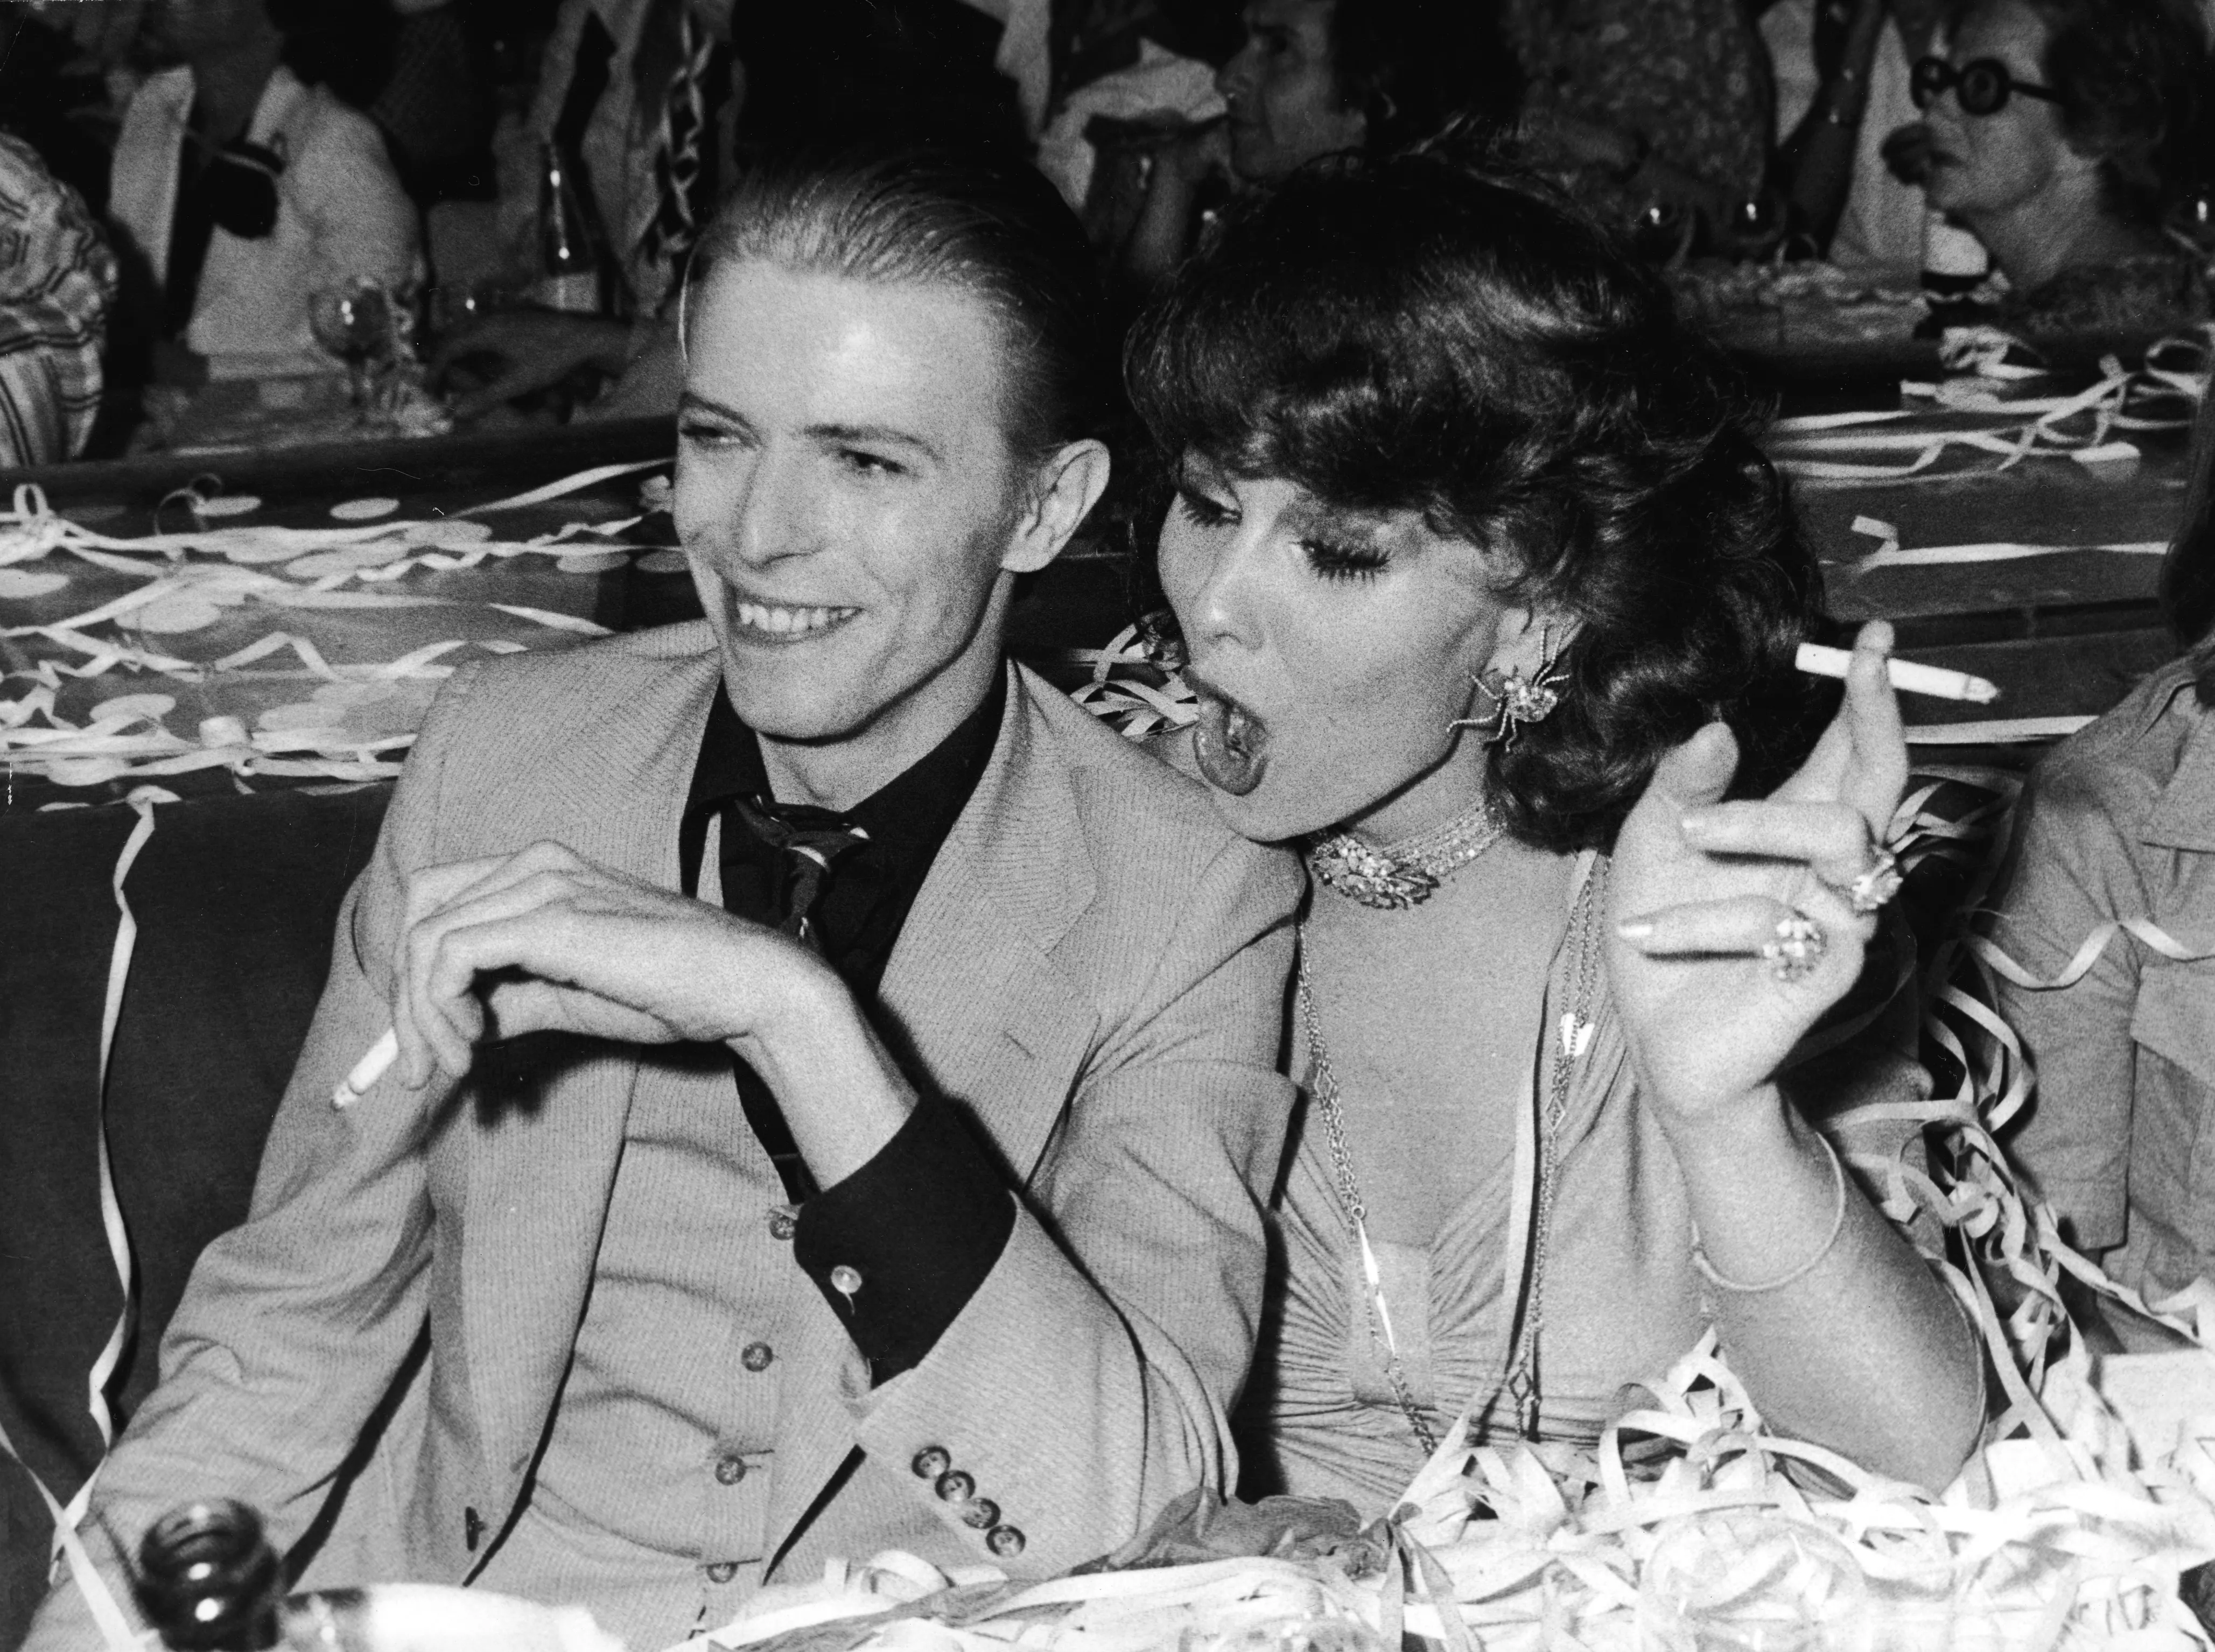 11 momentos de David Bowie, cuyo legado LGBT+ sigue vivo.